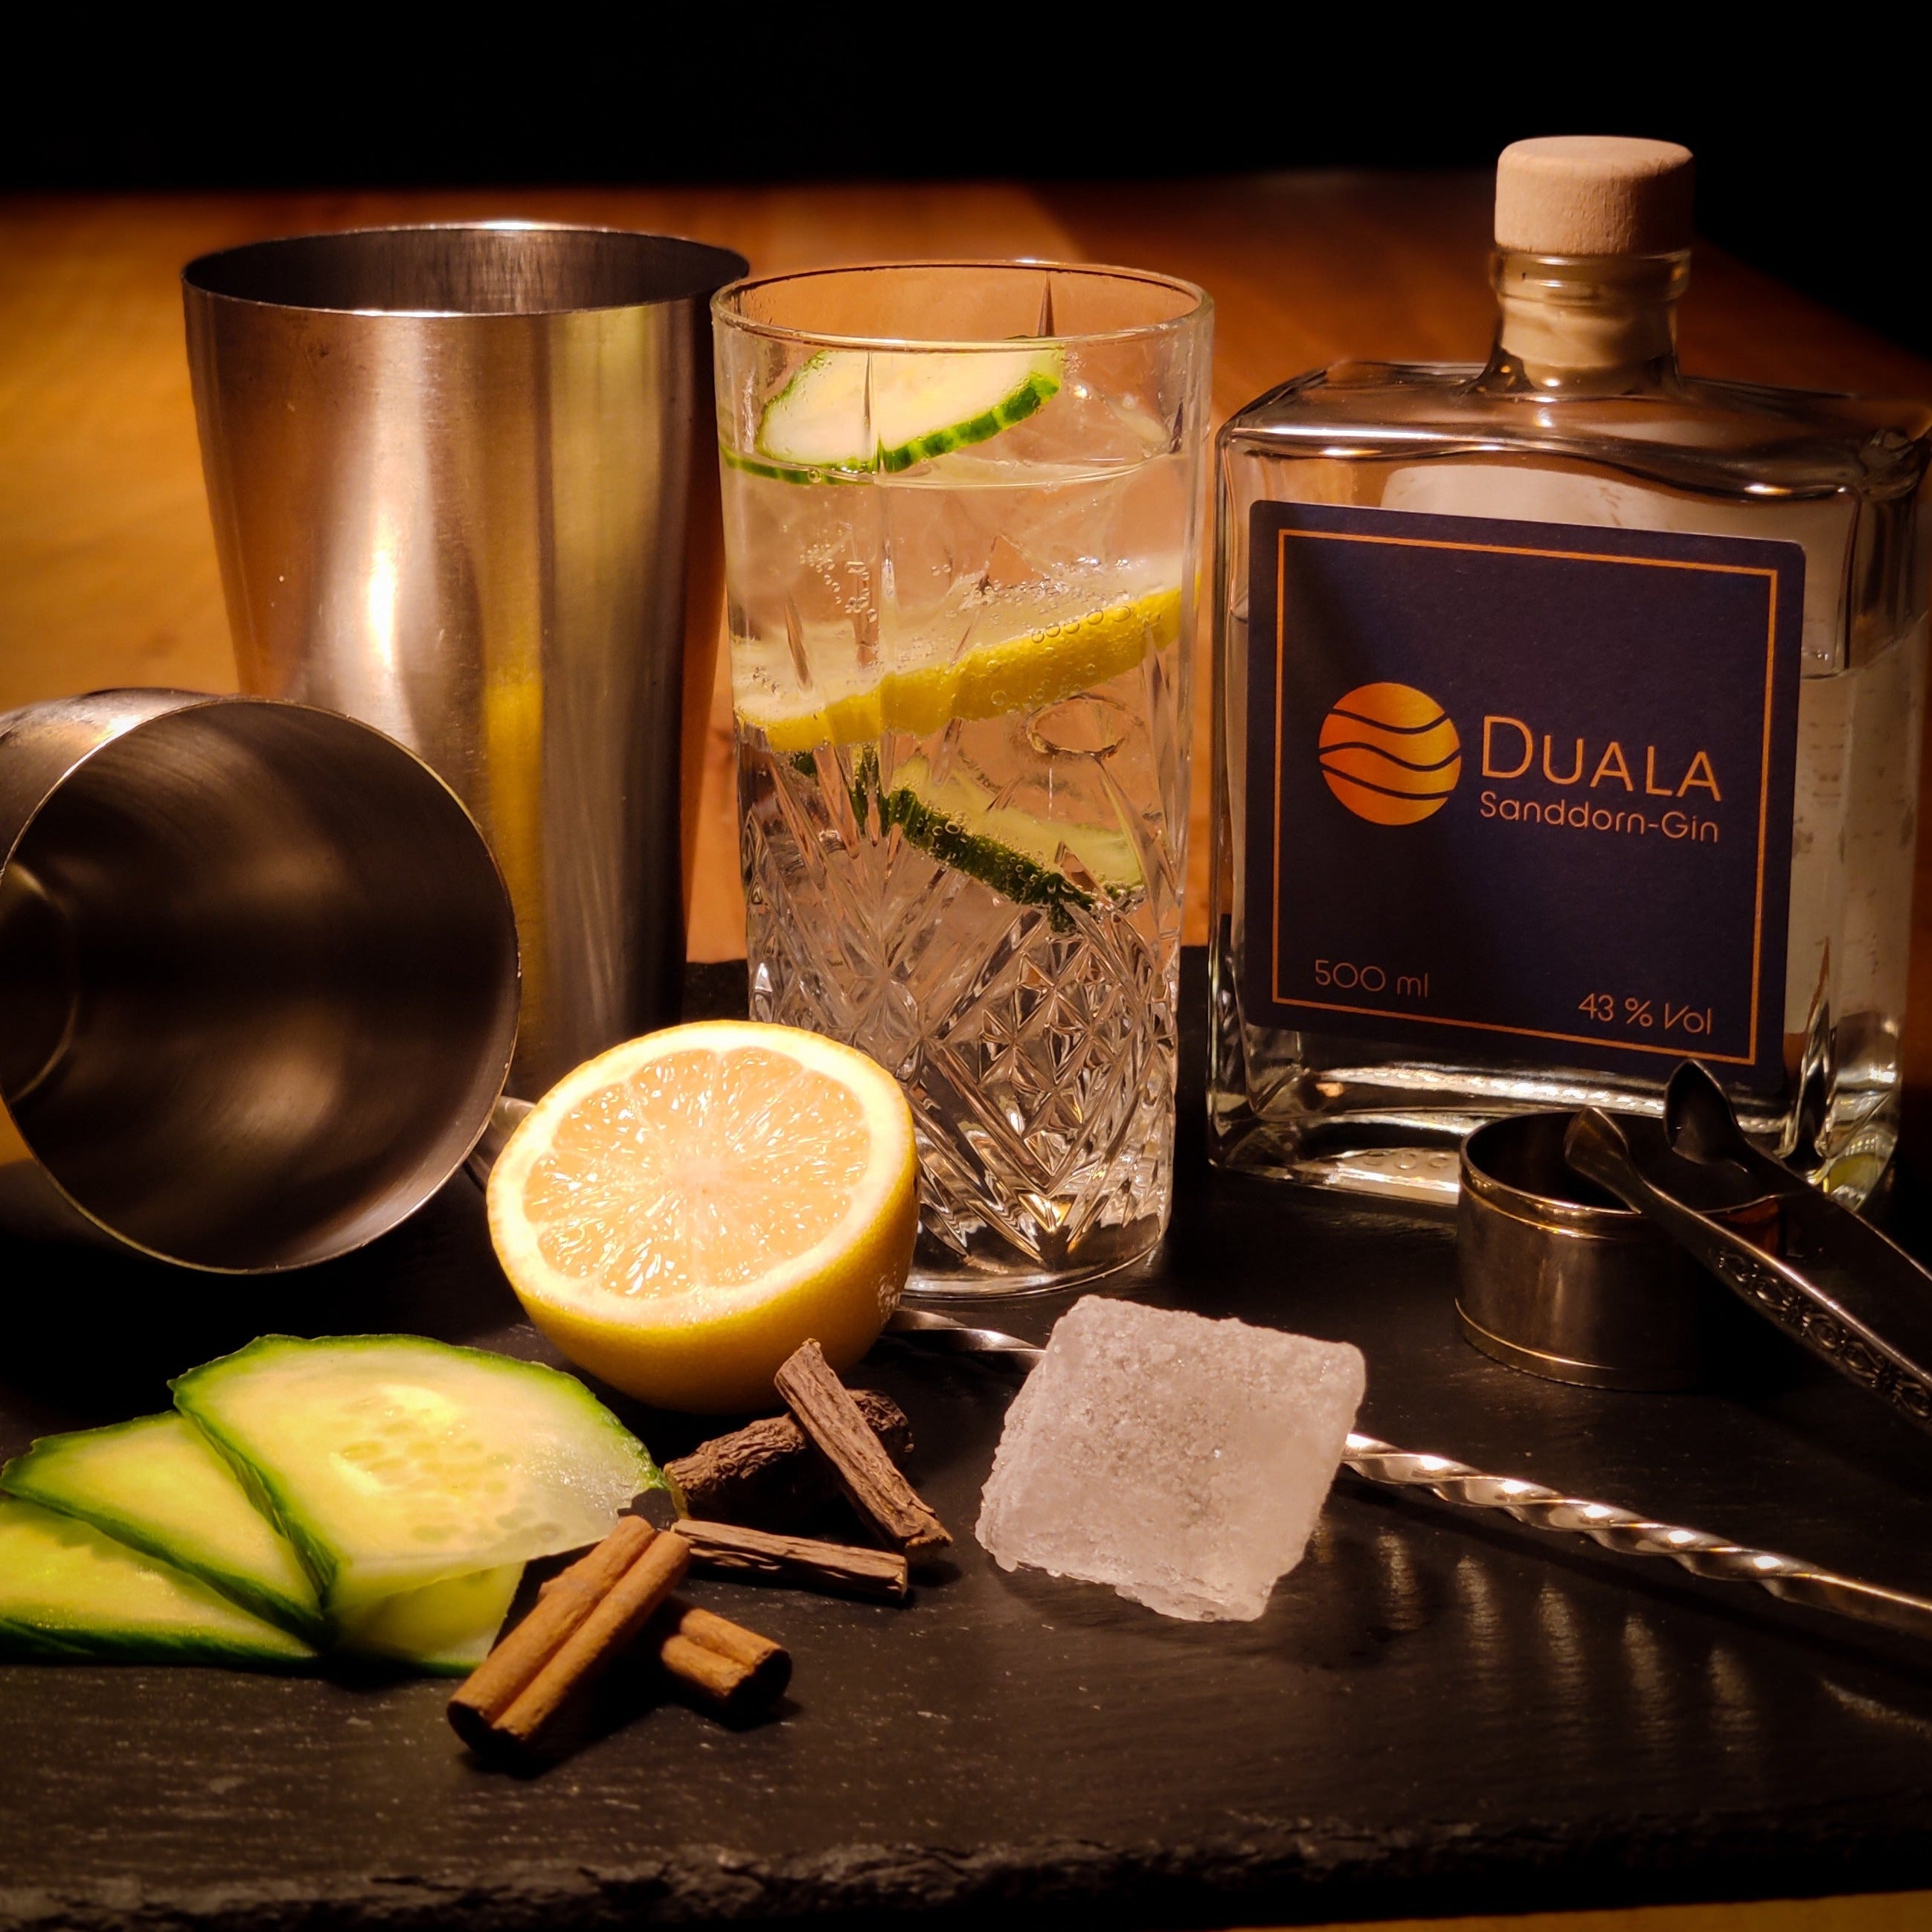 Duala Sanddorn-Gin 500ml